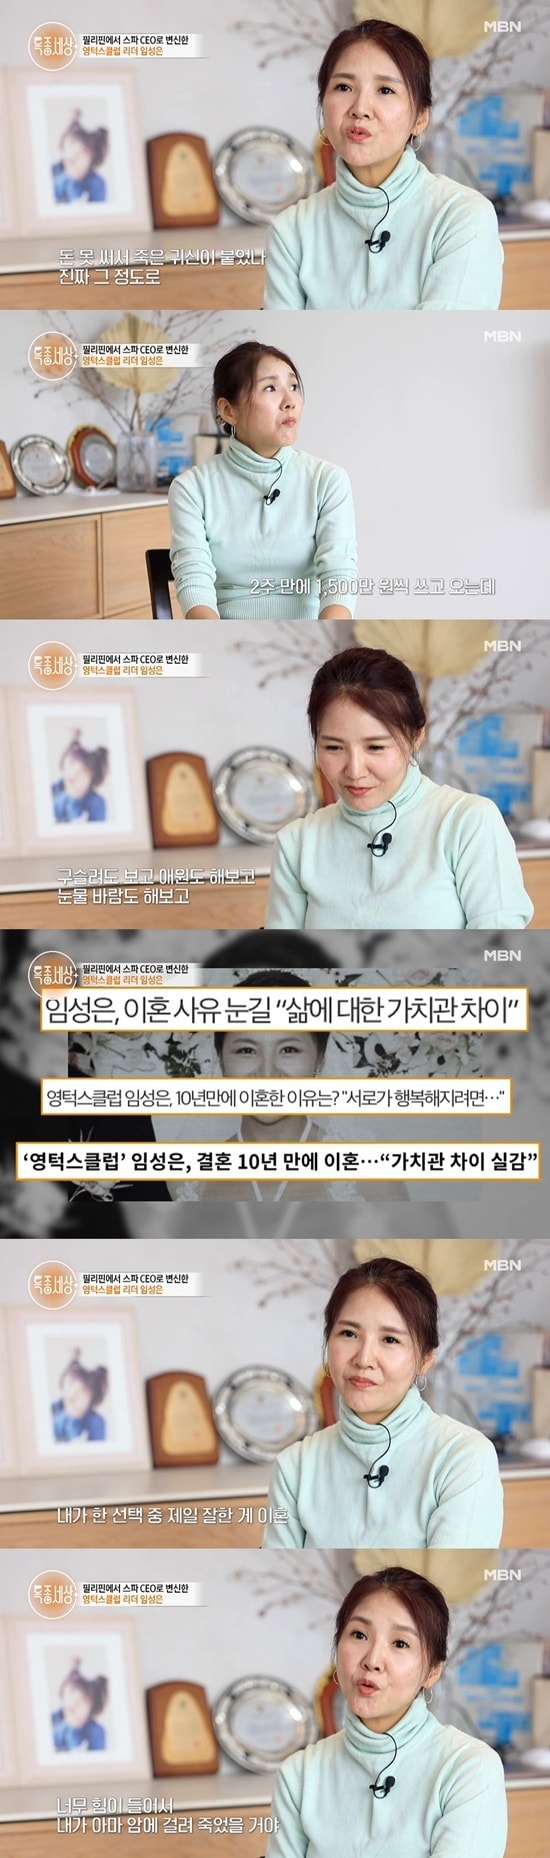 MBN '특종세상' 방송 화면 캡처